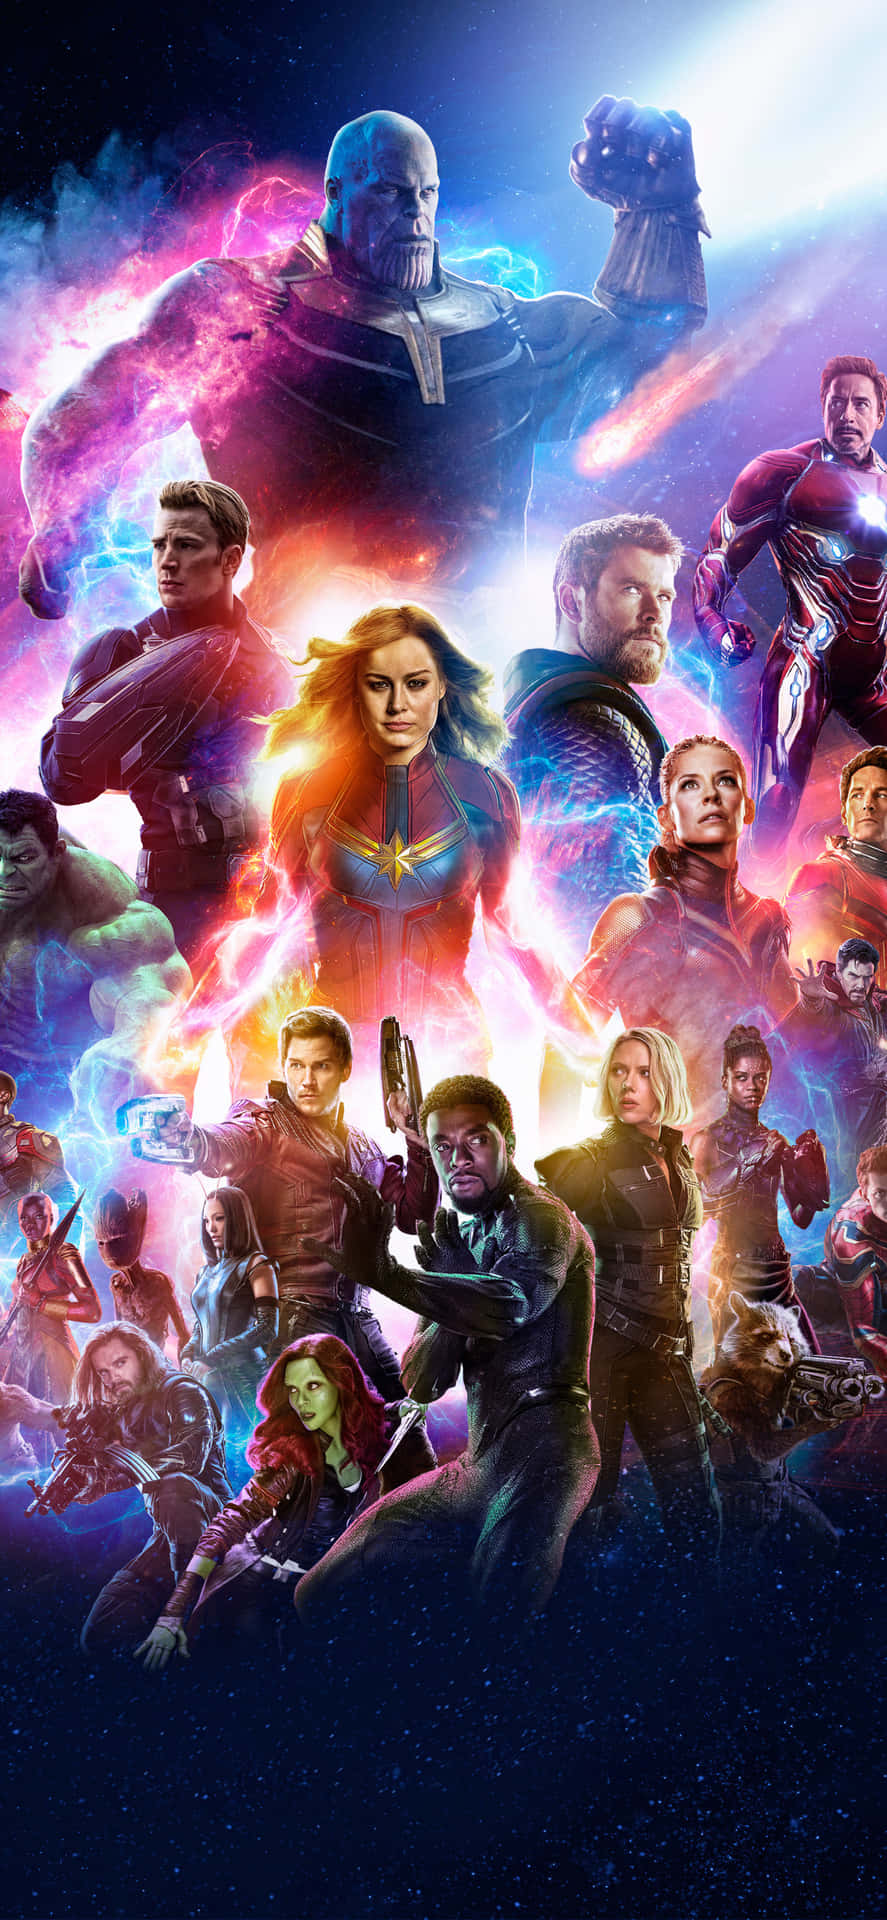 A Modern Take on Marvel's Avengers Wallpaper